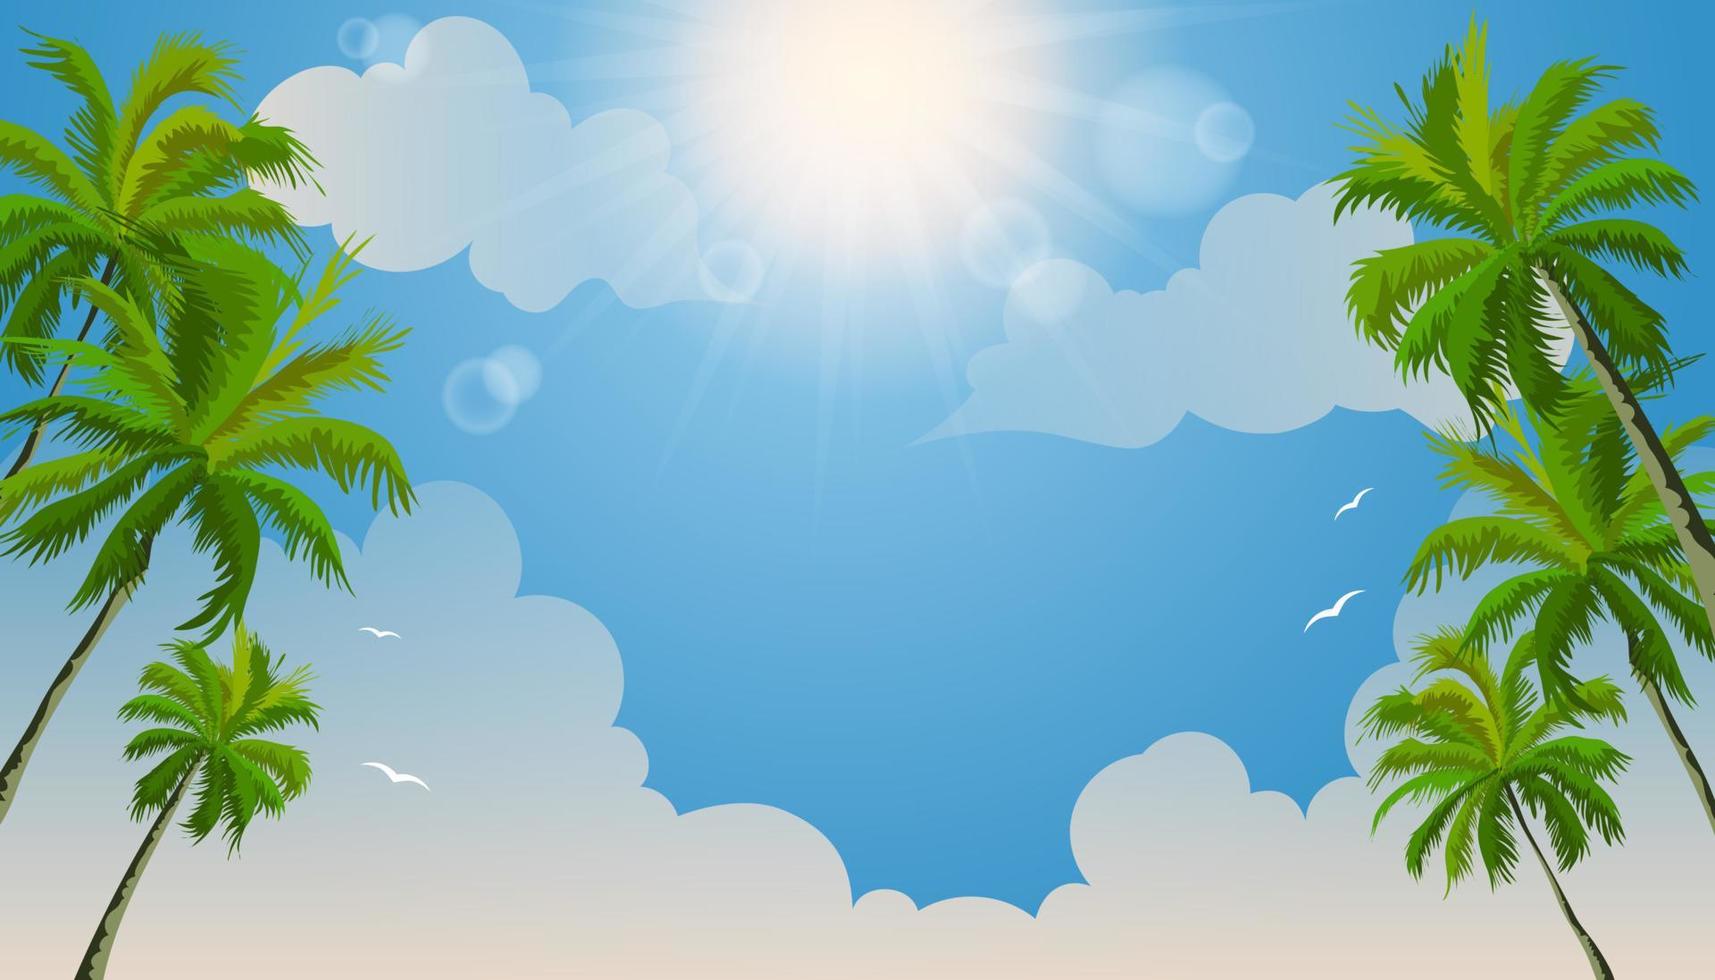 bella estate sulla spiaggia tropicale con palme da cocco e nuvole. design estivo di sfondo vettore